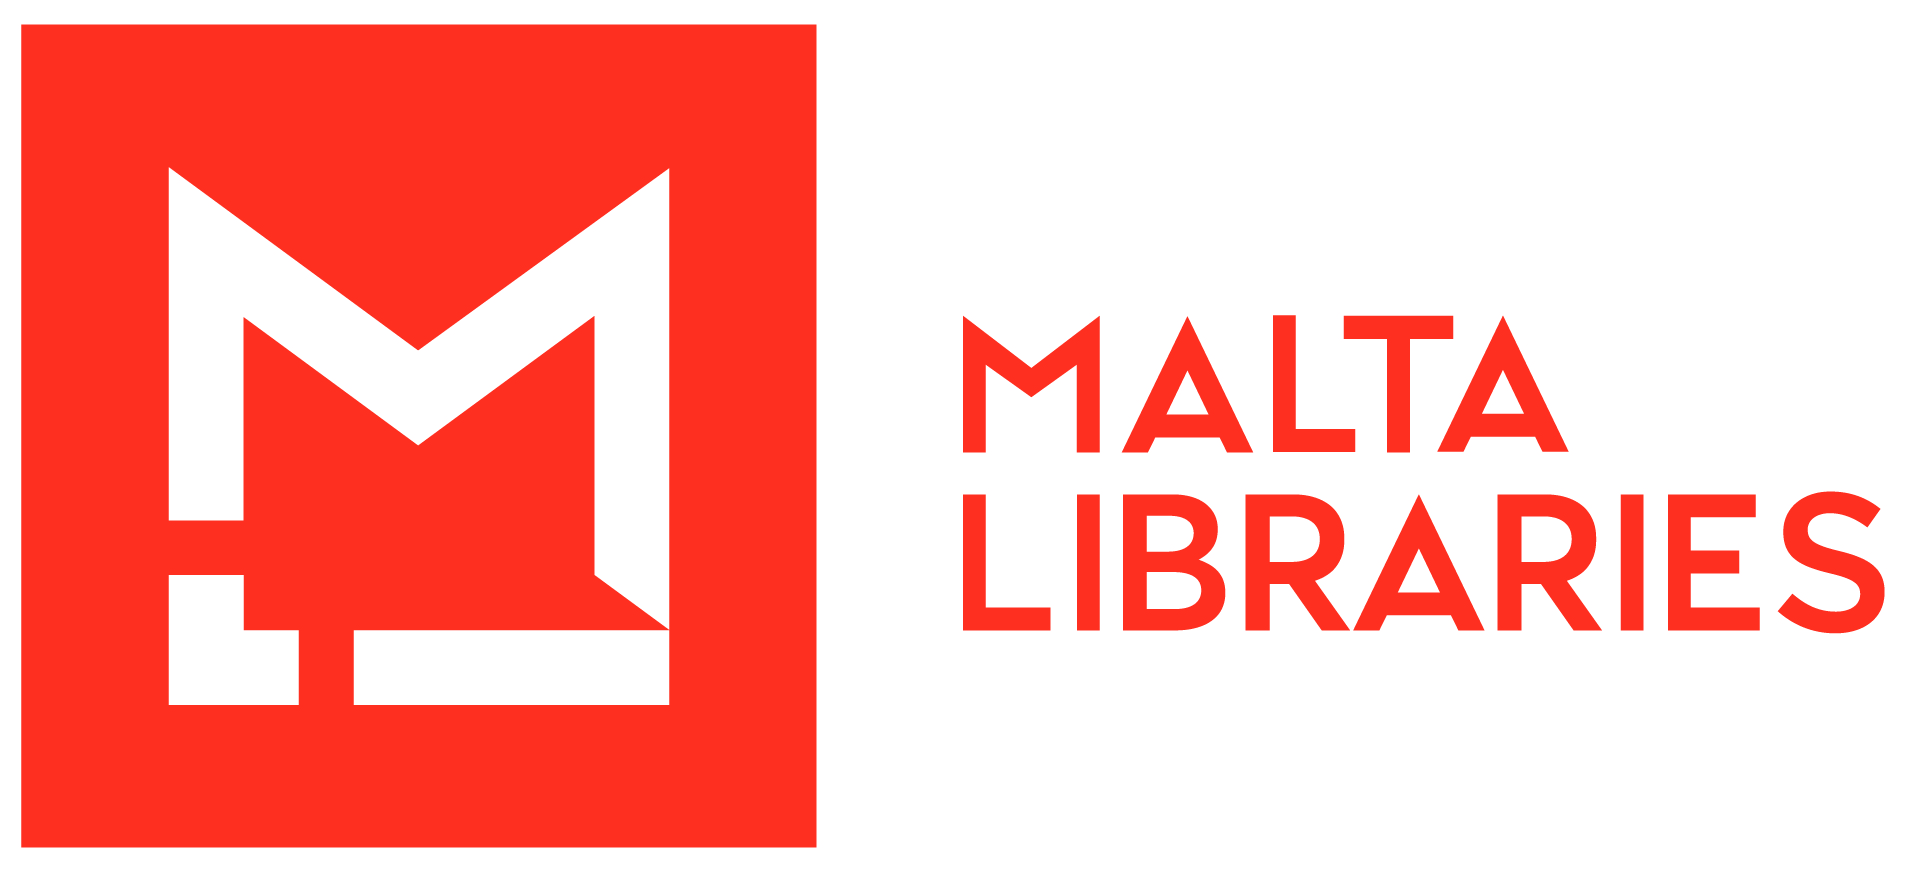 Bibljoteka Nazzjonali ta’ Malta / Malta Libraries – The National Library of Malta